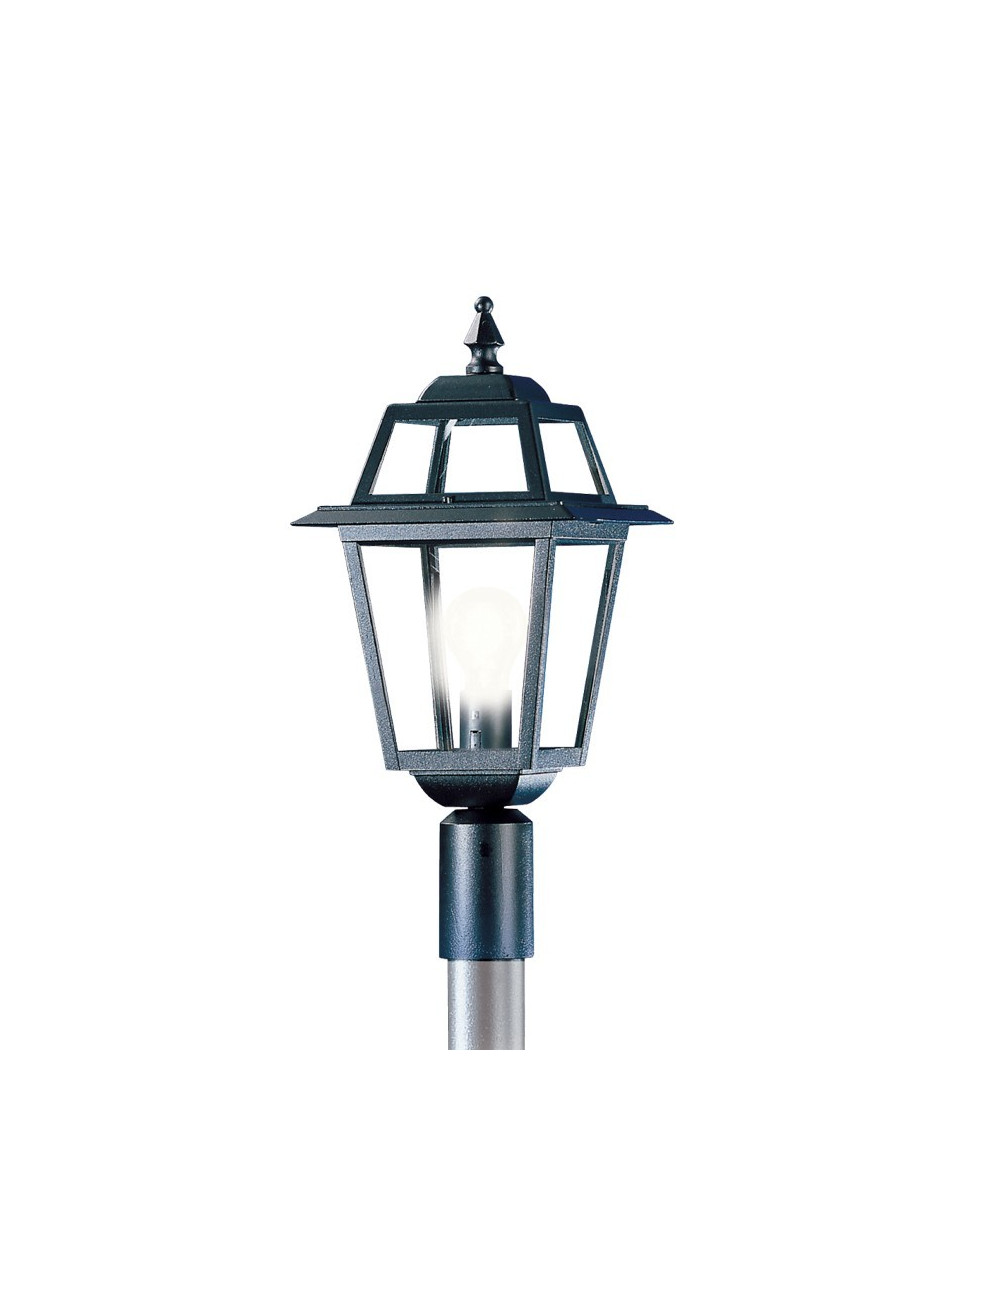 Linterna ARTEMIDE con accesorio para la iluminación de jardín exterior con poste existente